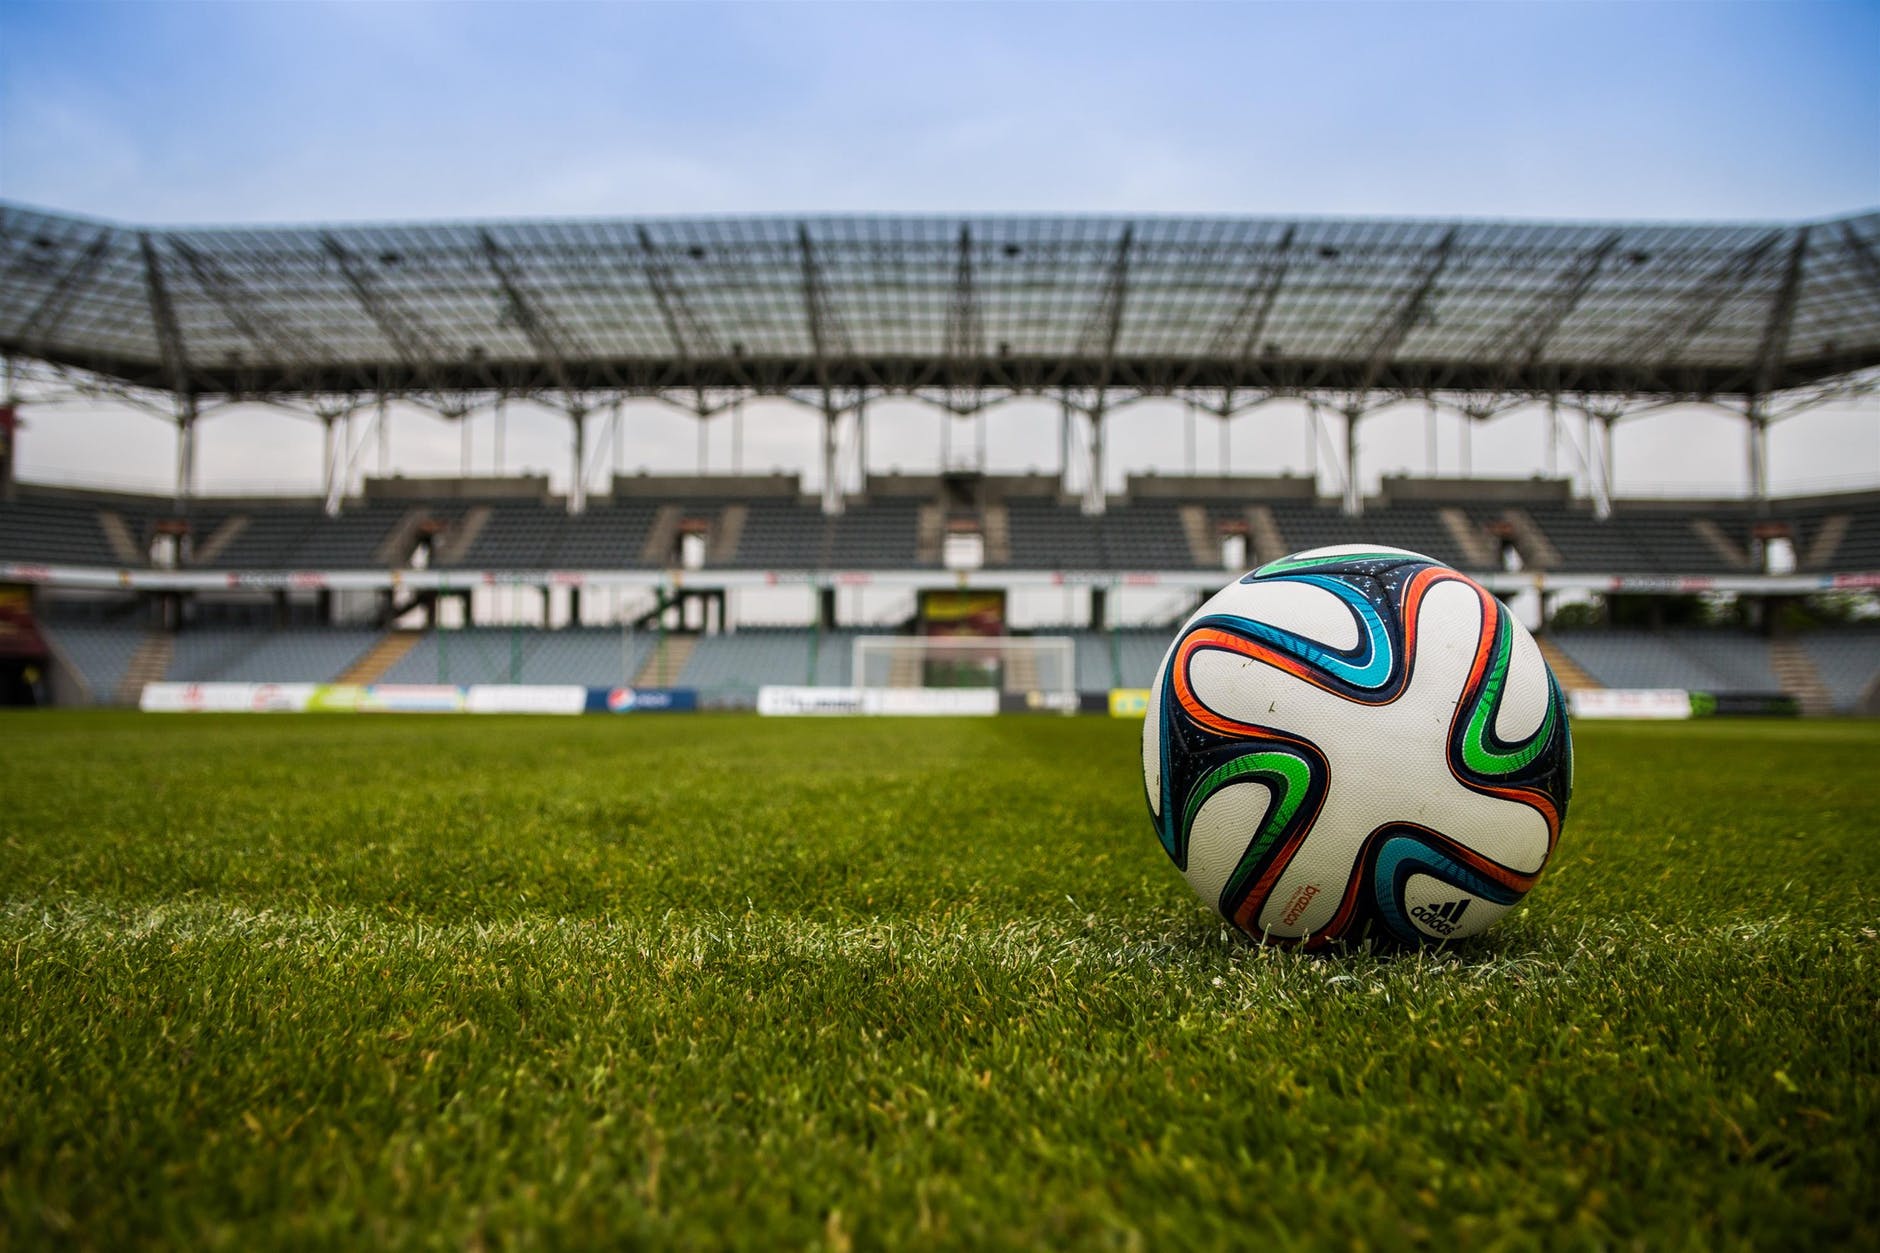 soccer ball on grass pitch